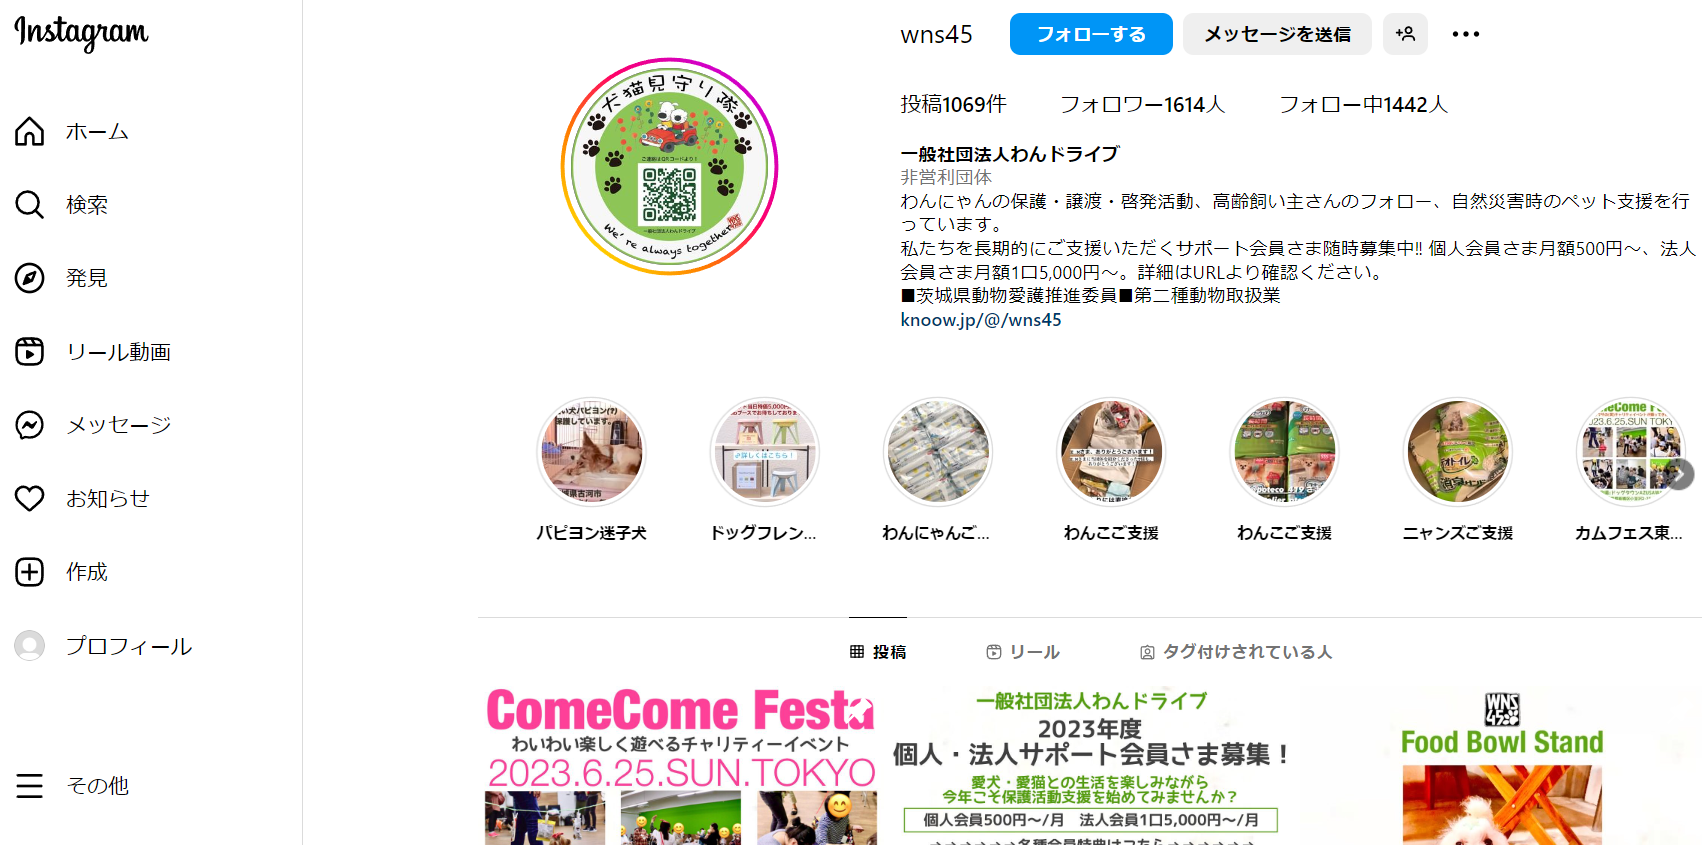 ComeCome Festa 2023 TOKYO